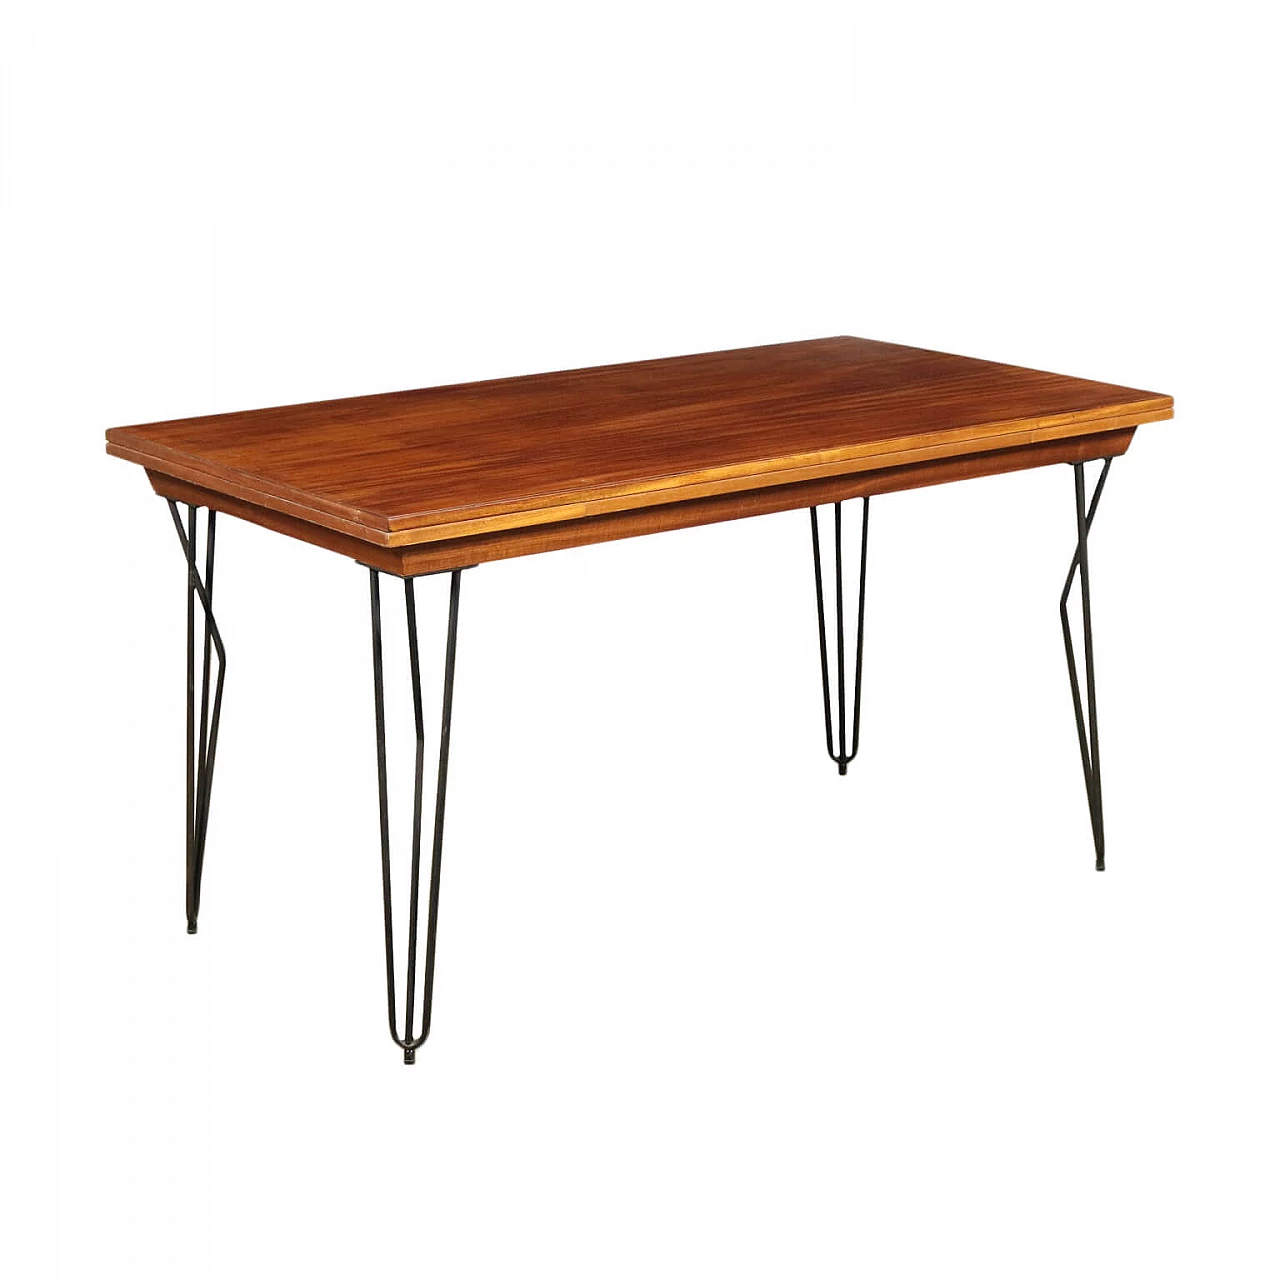 Extending table in mahogany veneered wood and enameled metal, 60s 1203289